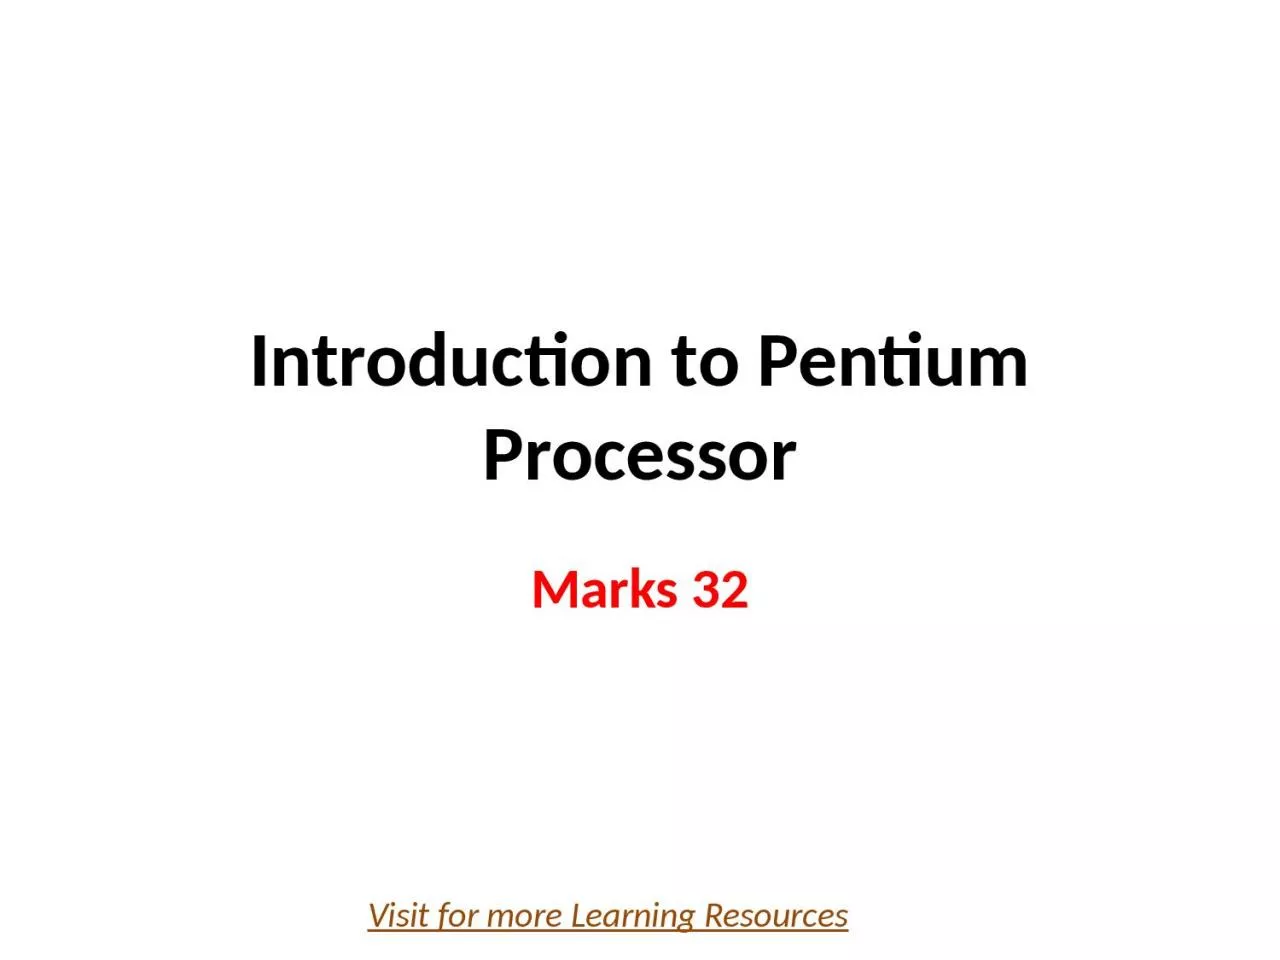 Introduction to Pentium Processor